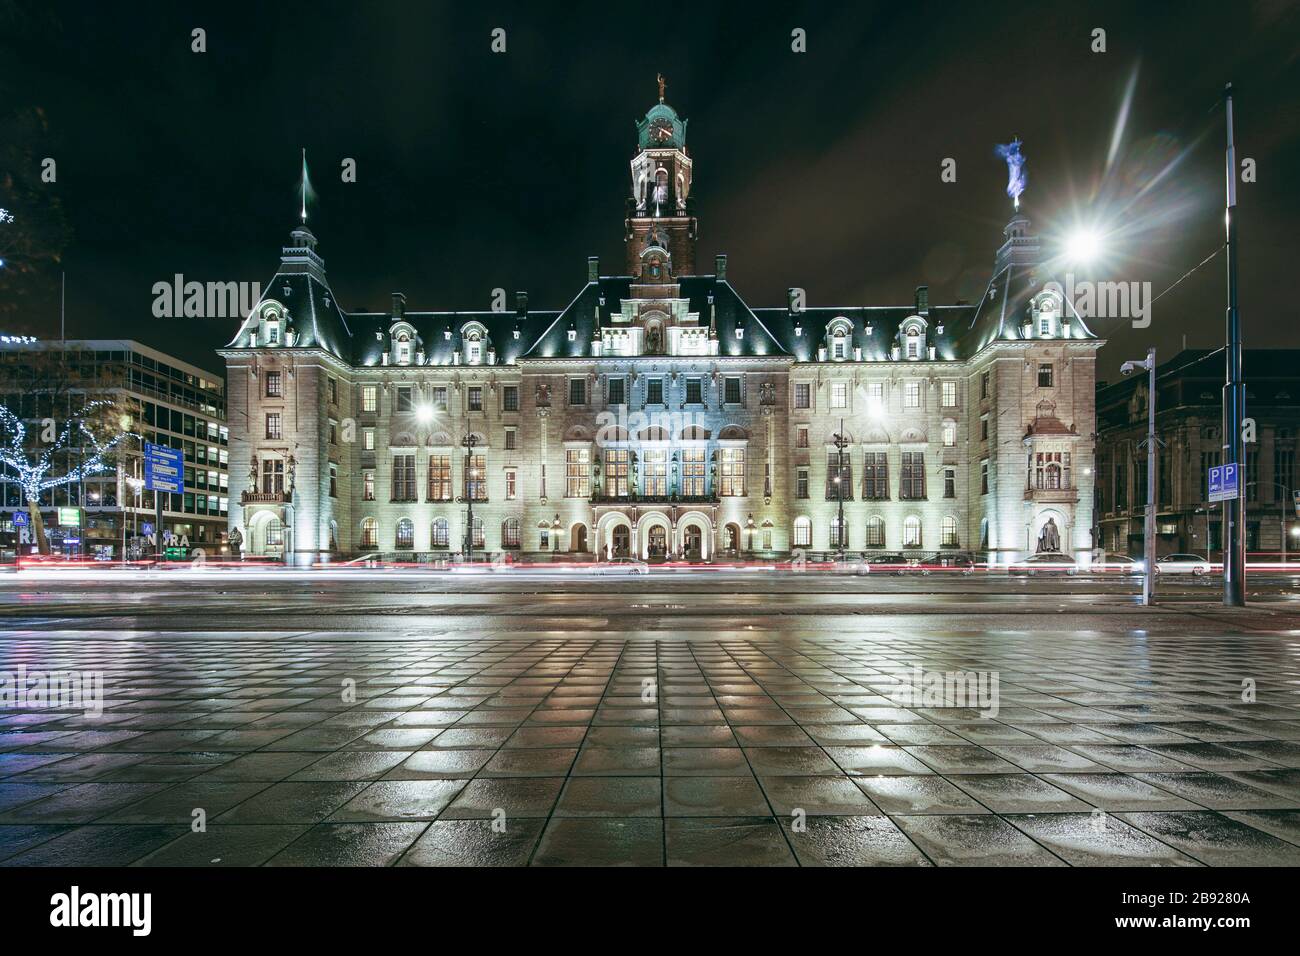 Stadhuis en el ayuntamiento de Rotterdam por la noche con franjas claras Foto de stock